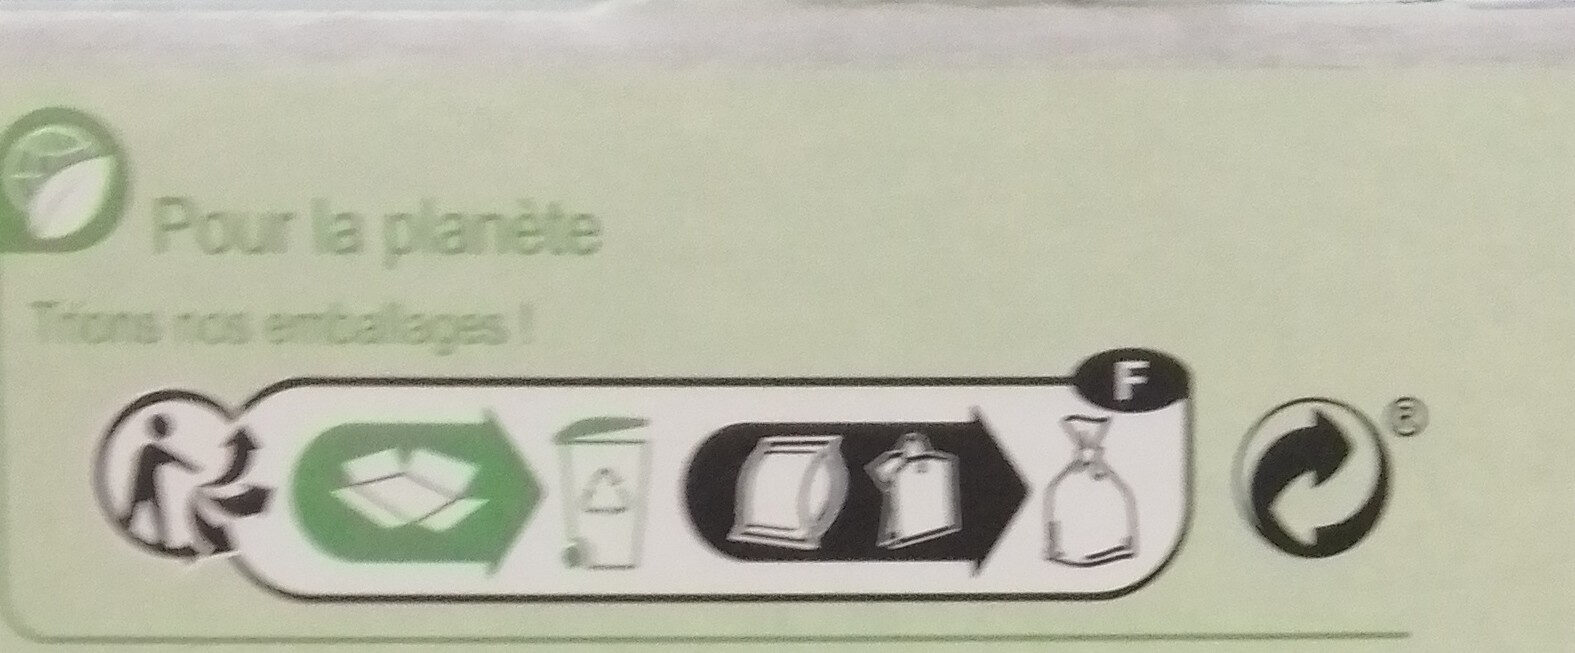 Infusion verveine - Instruction de recyclage et/ou informations d'emballage - fr